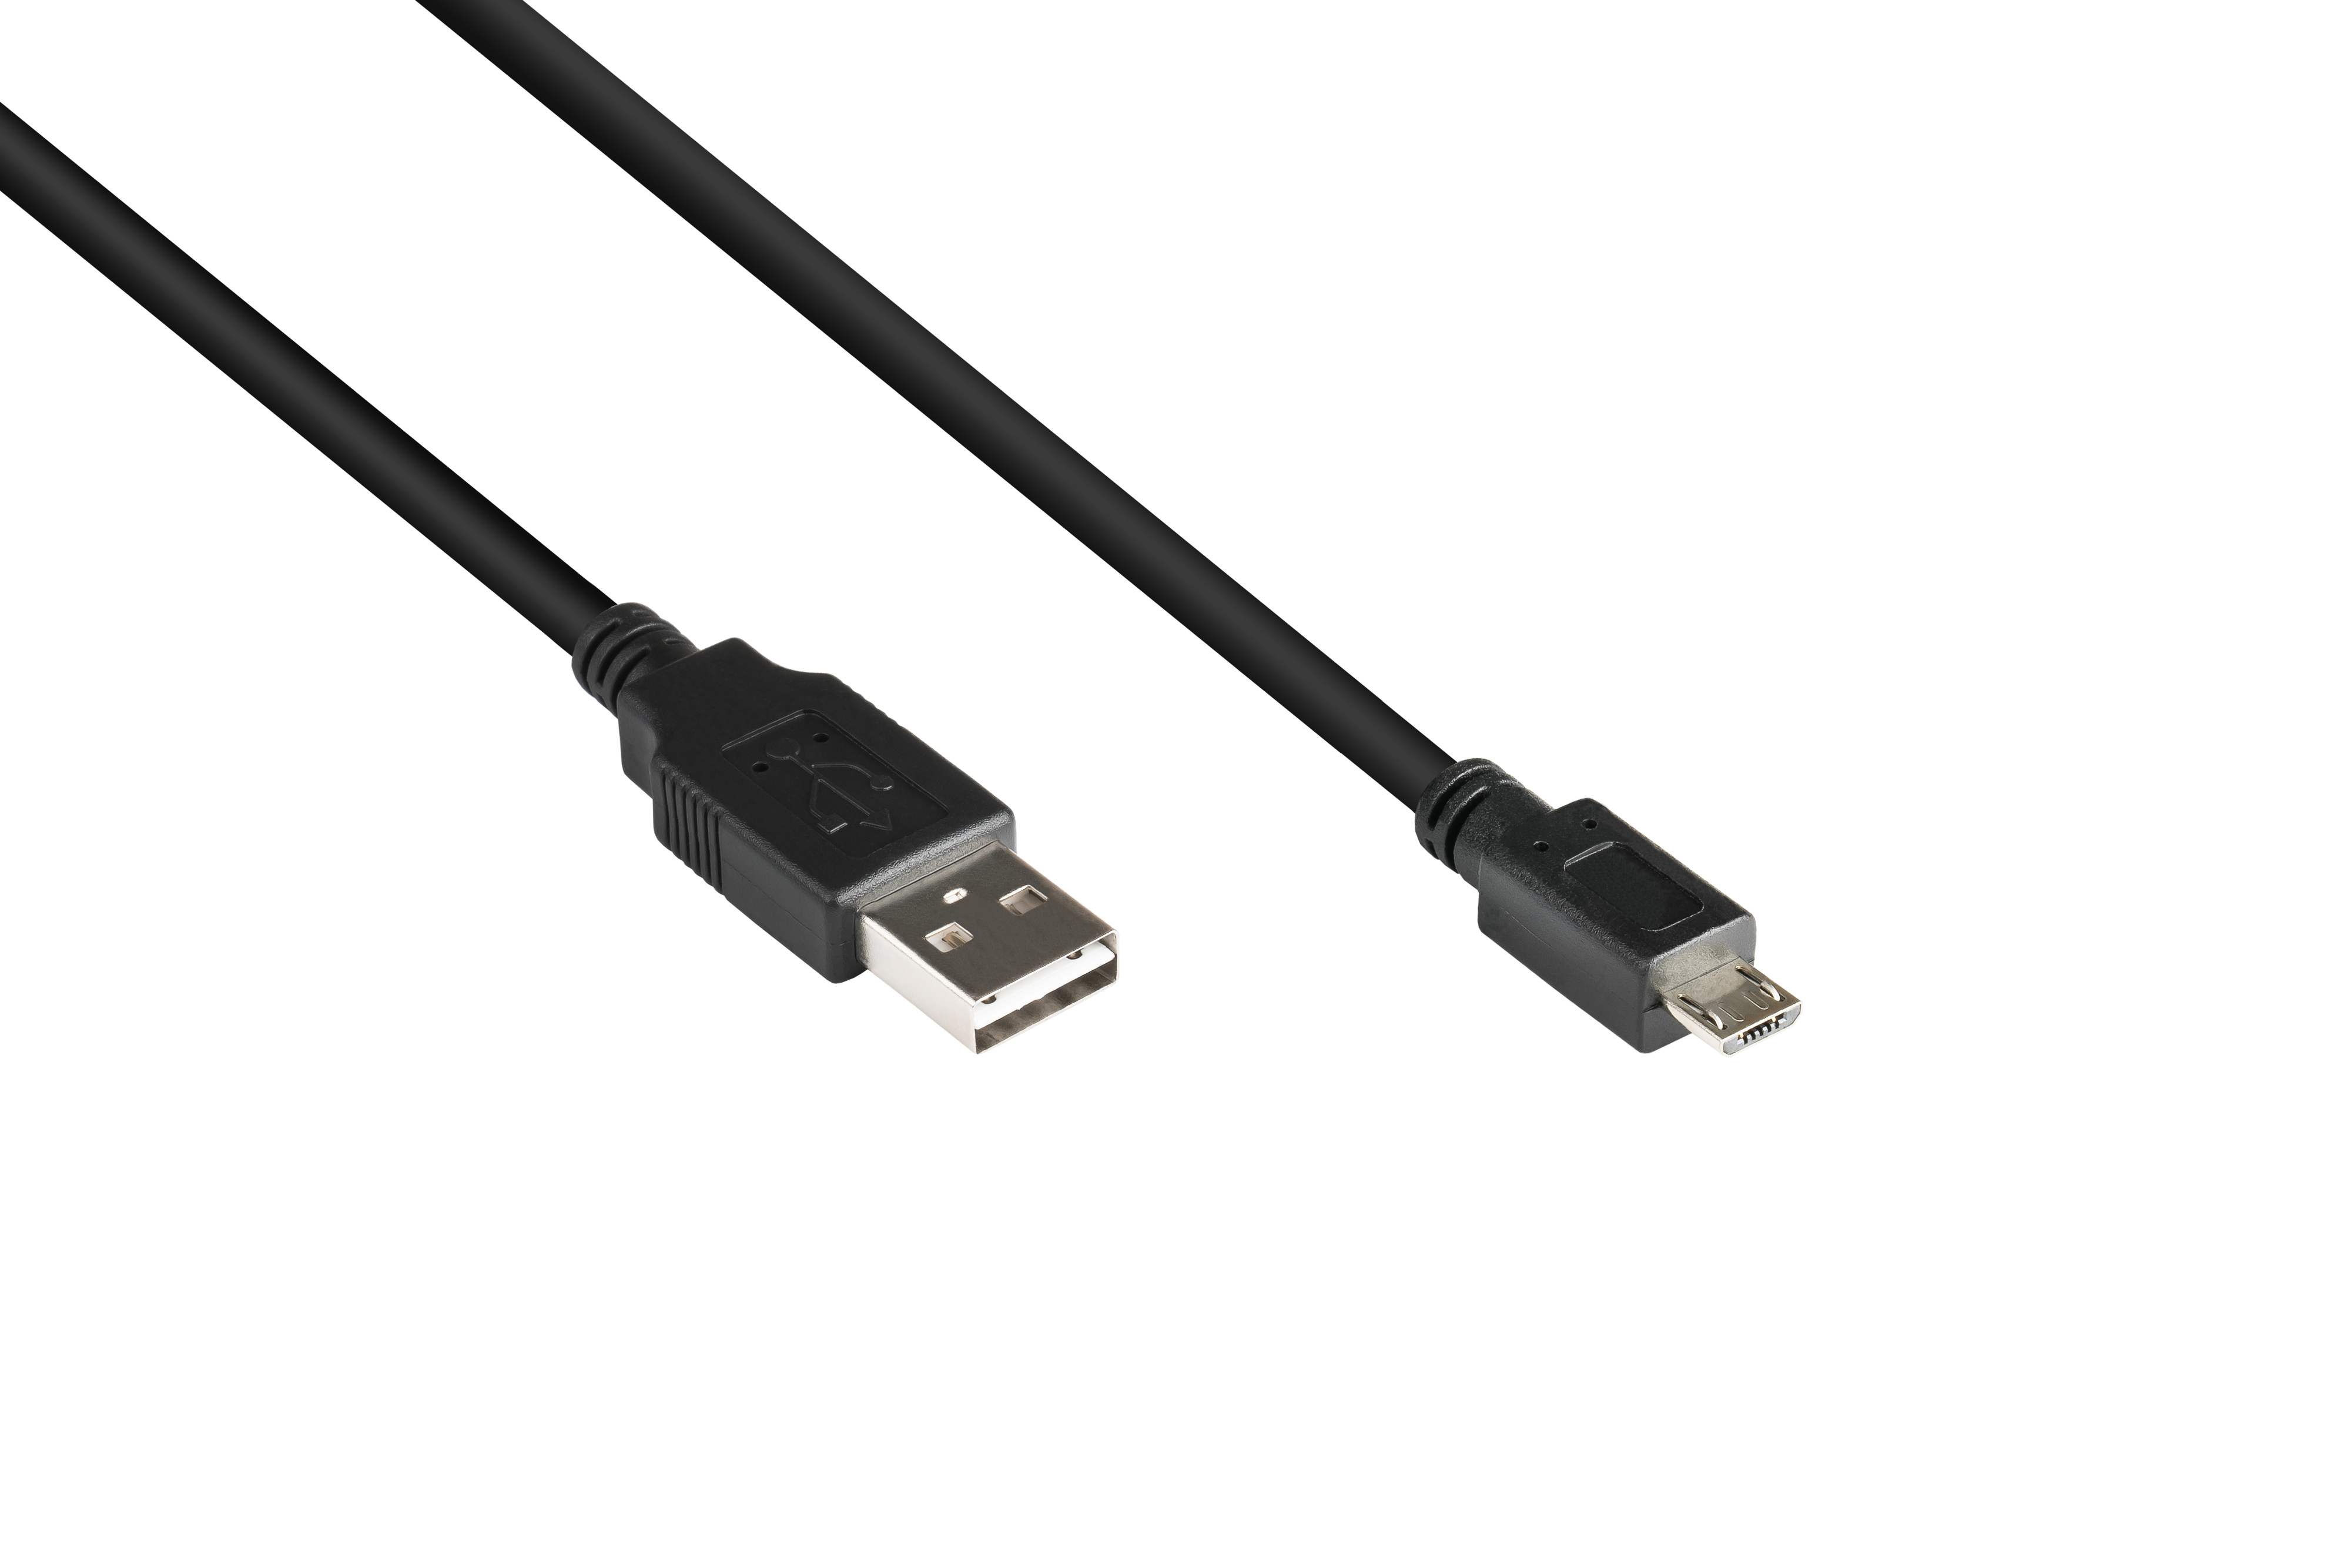 A an Stecker Micro Anschlusskabel schwarz EASY 2.0 B, KABELMEISTER Stecker USB